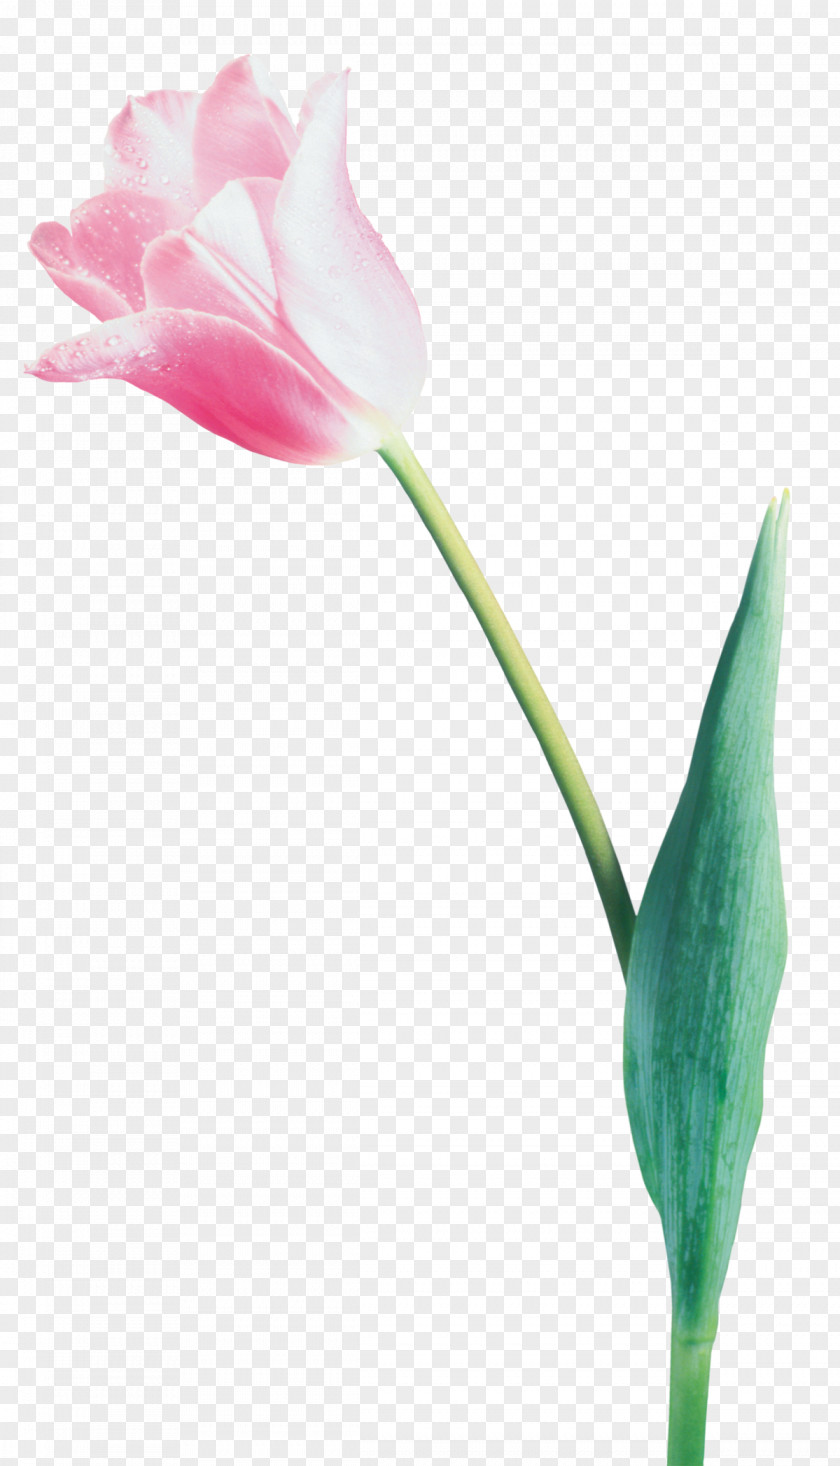 Tulip Flower LiveInternet Digital Image Clip Art PNG